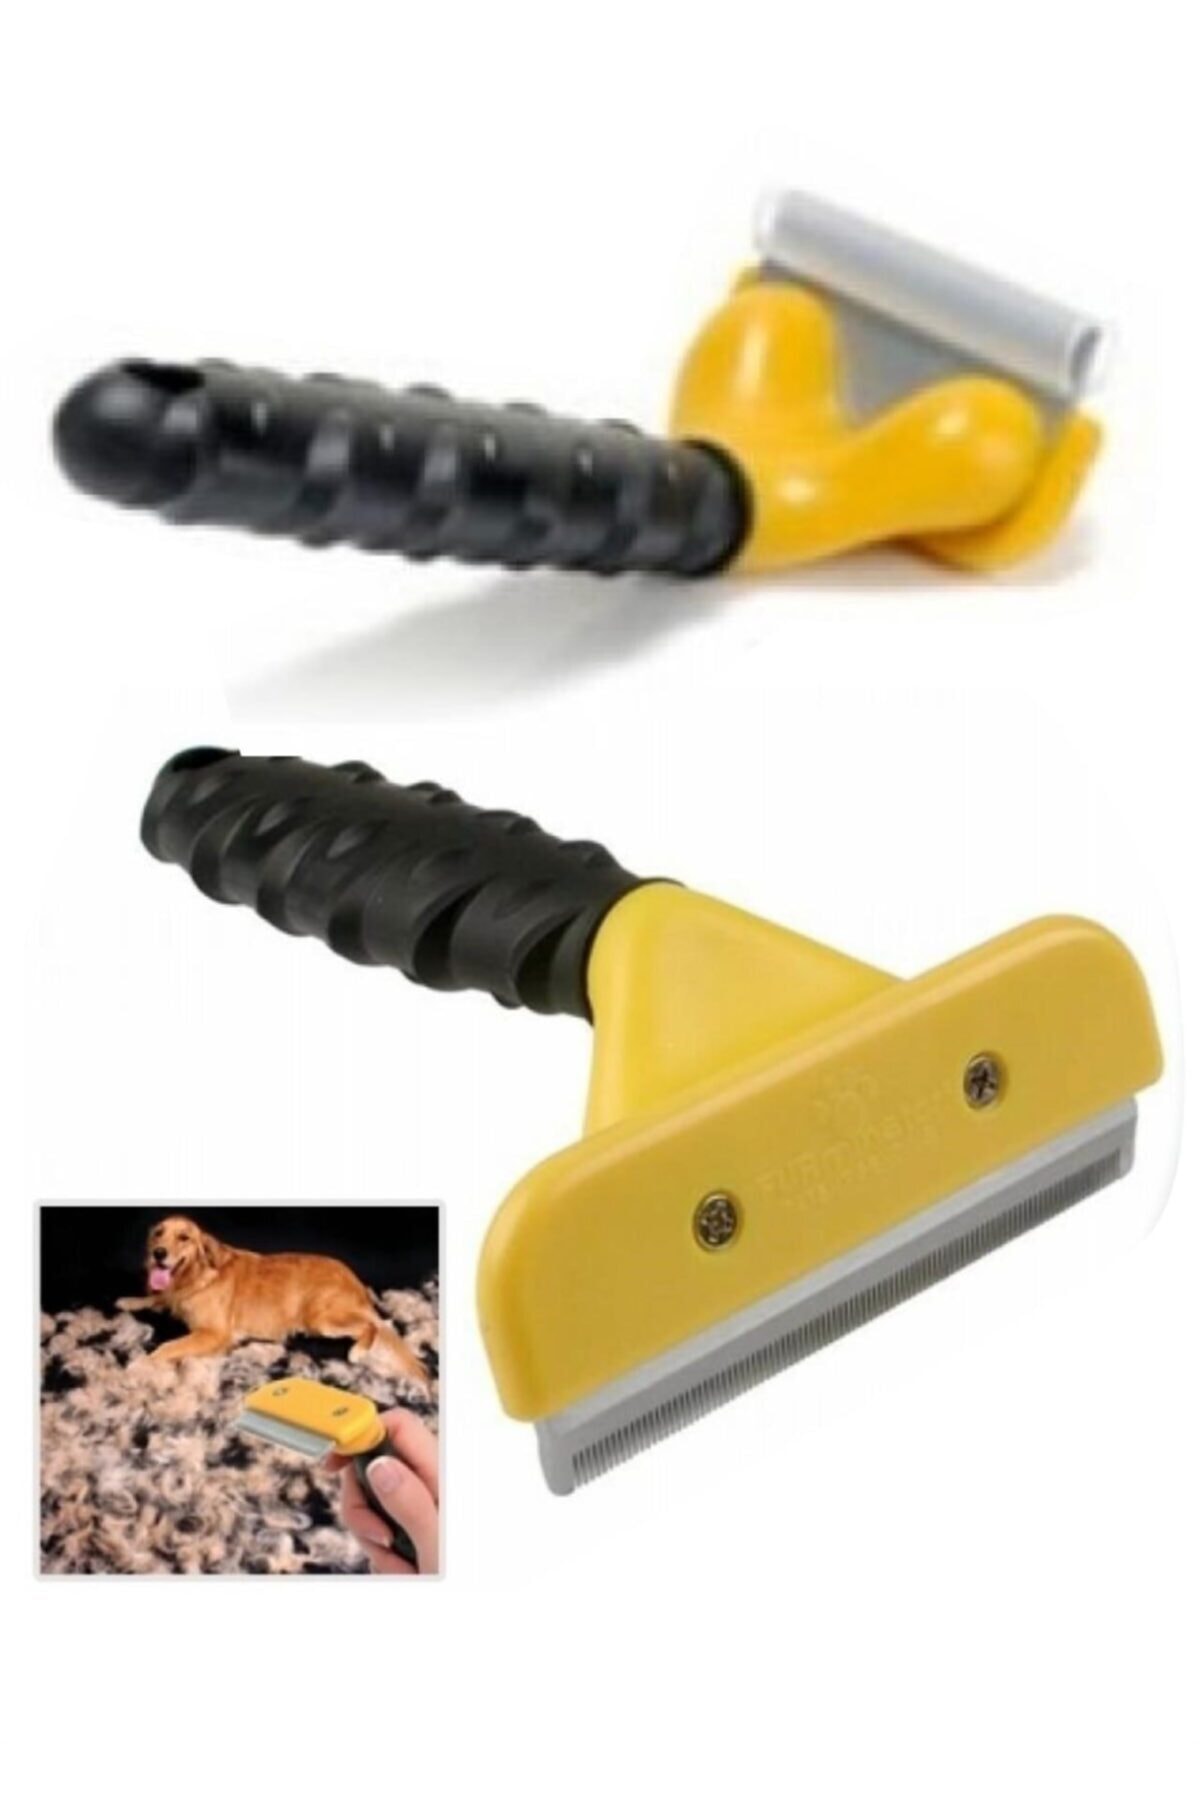 İTC STORE 10 Cm Kedi Köpek Tarağı Fırçası Tüy Alıcı Toplayıcı Tarak Fırça